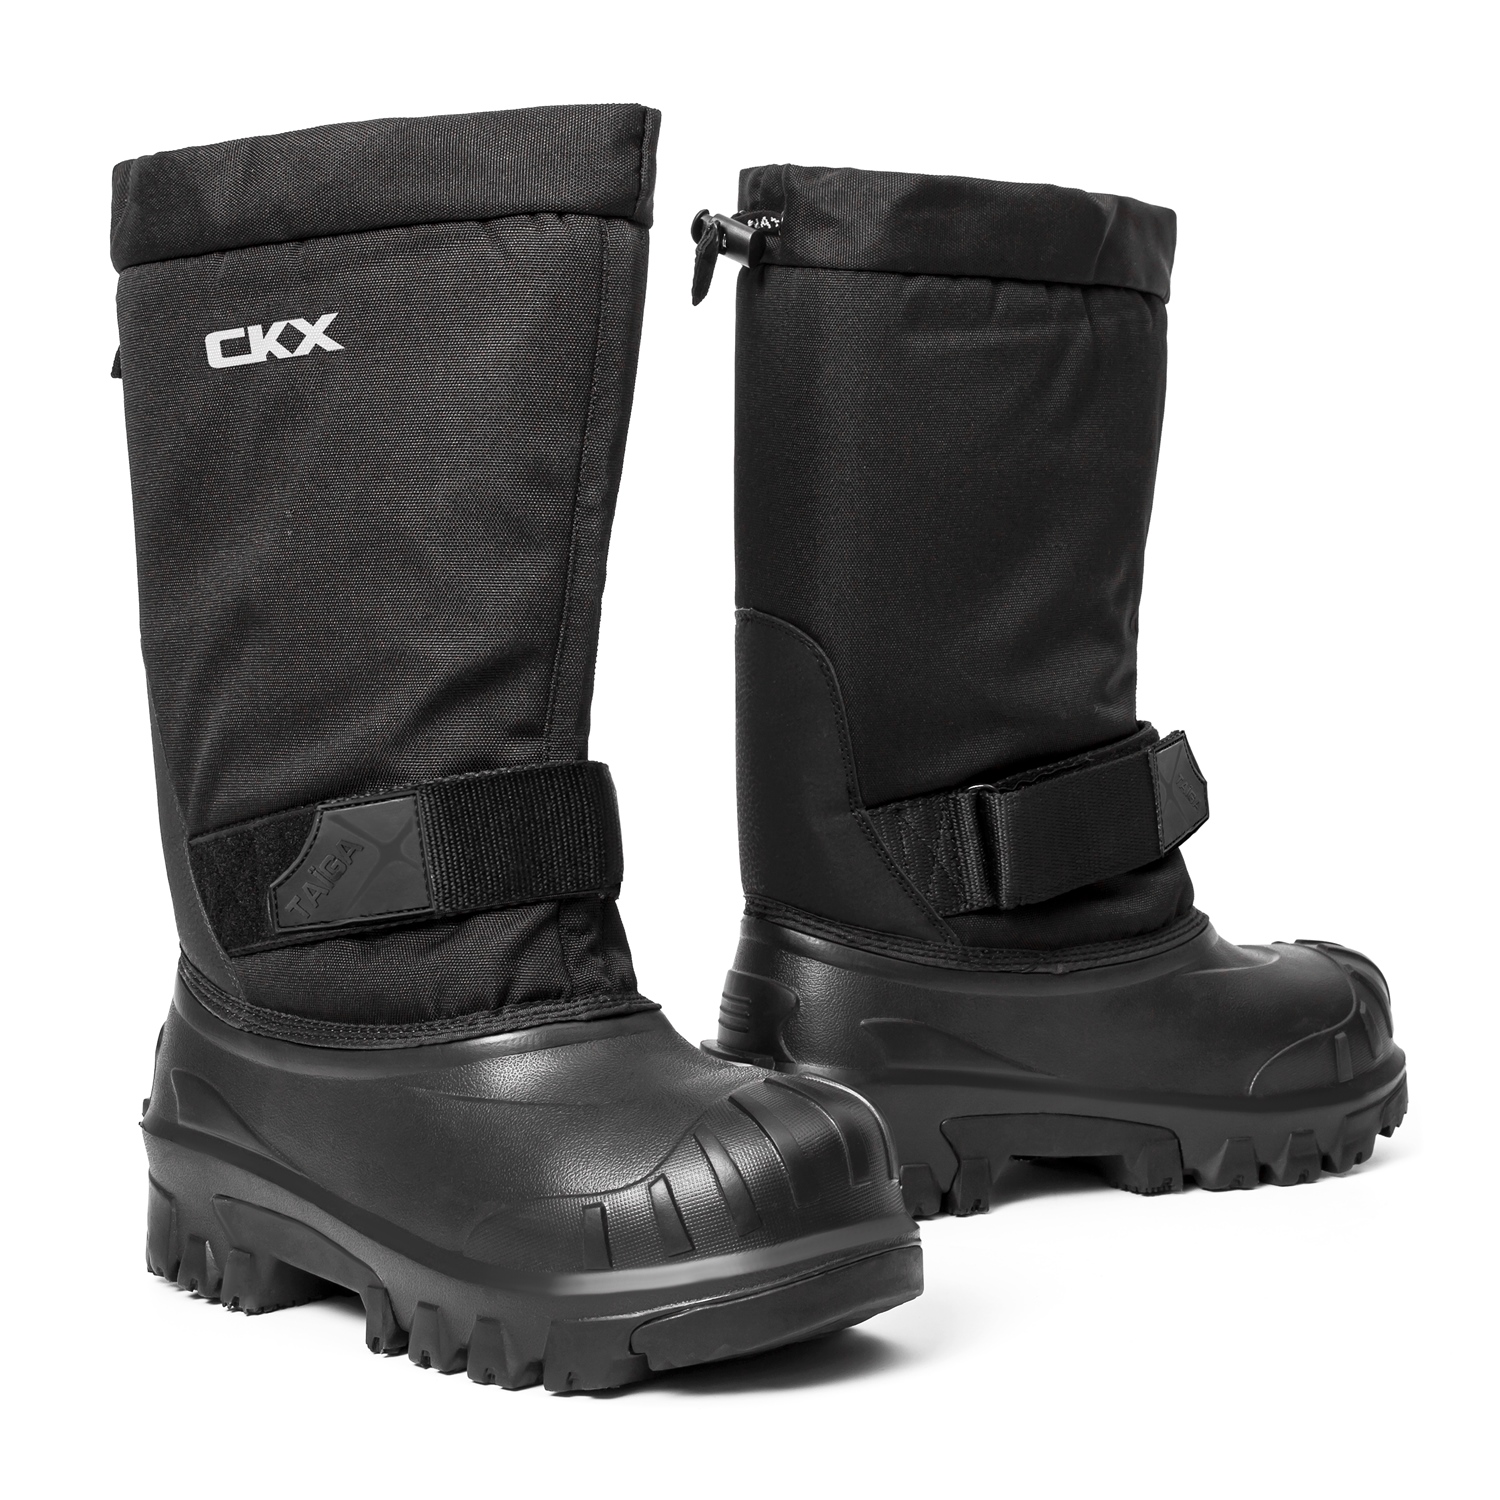 ski doo boots canada